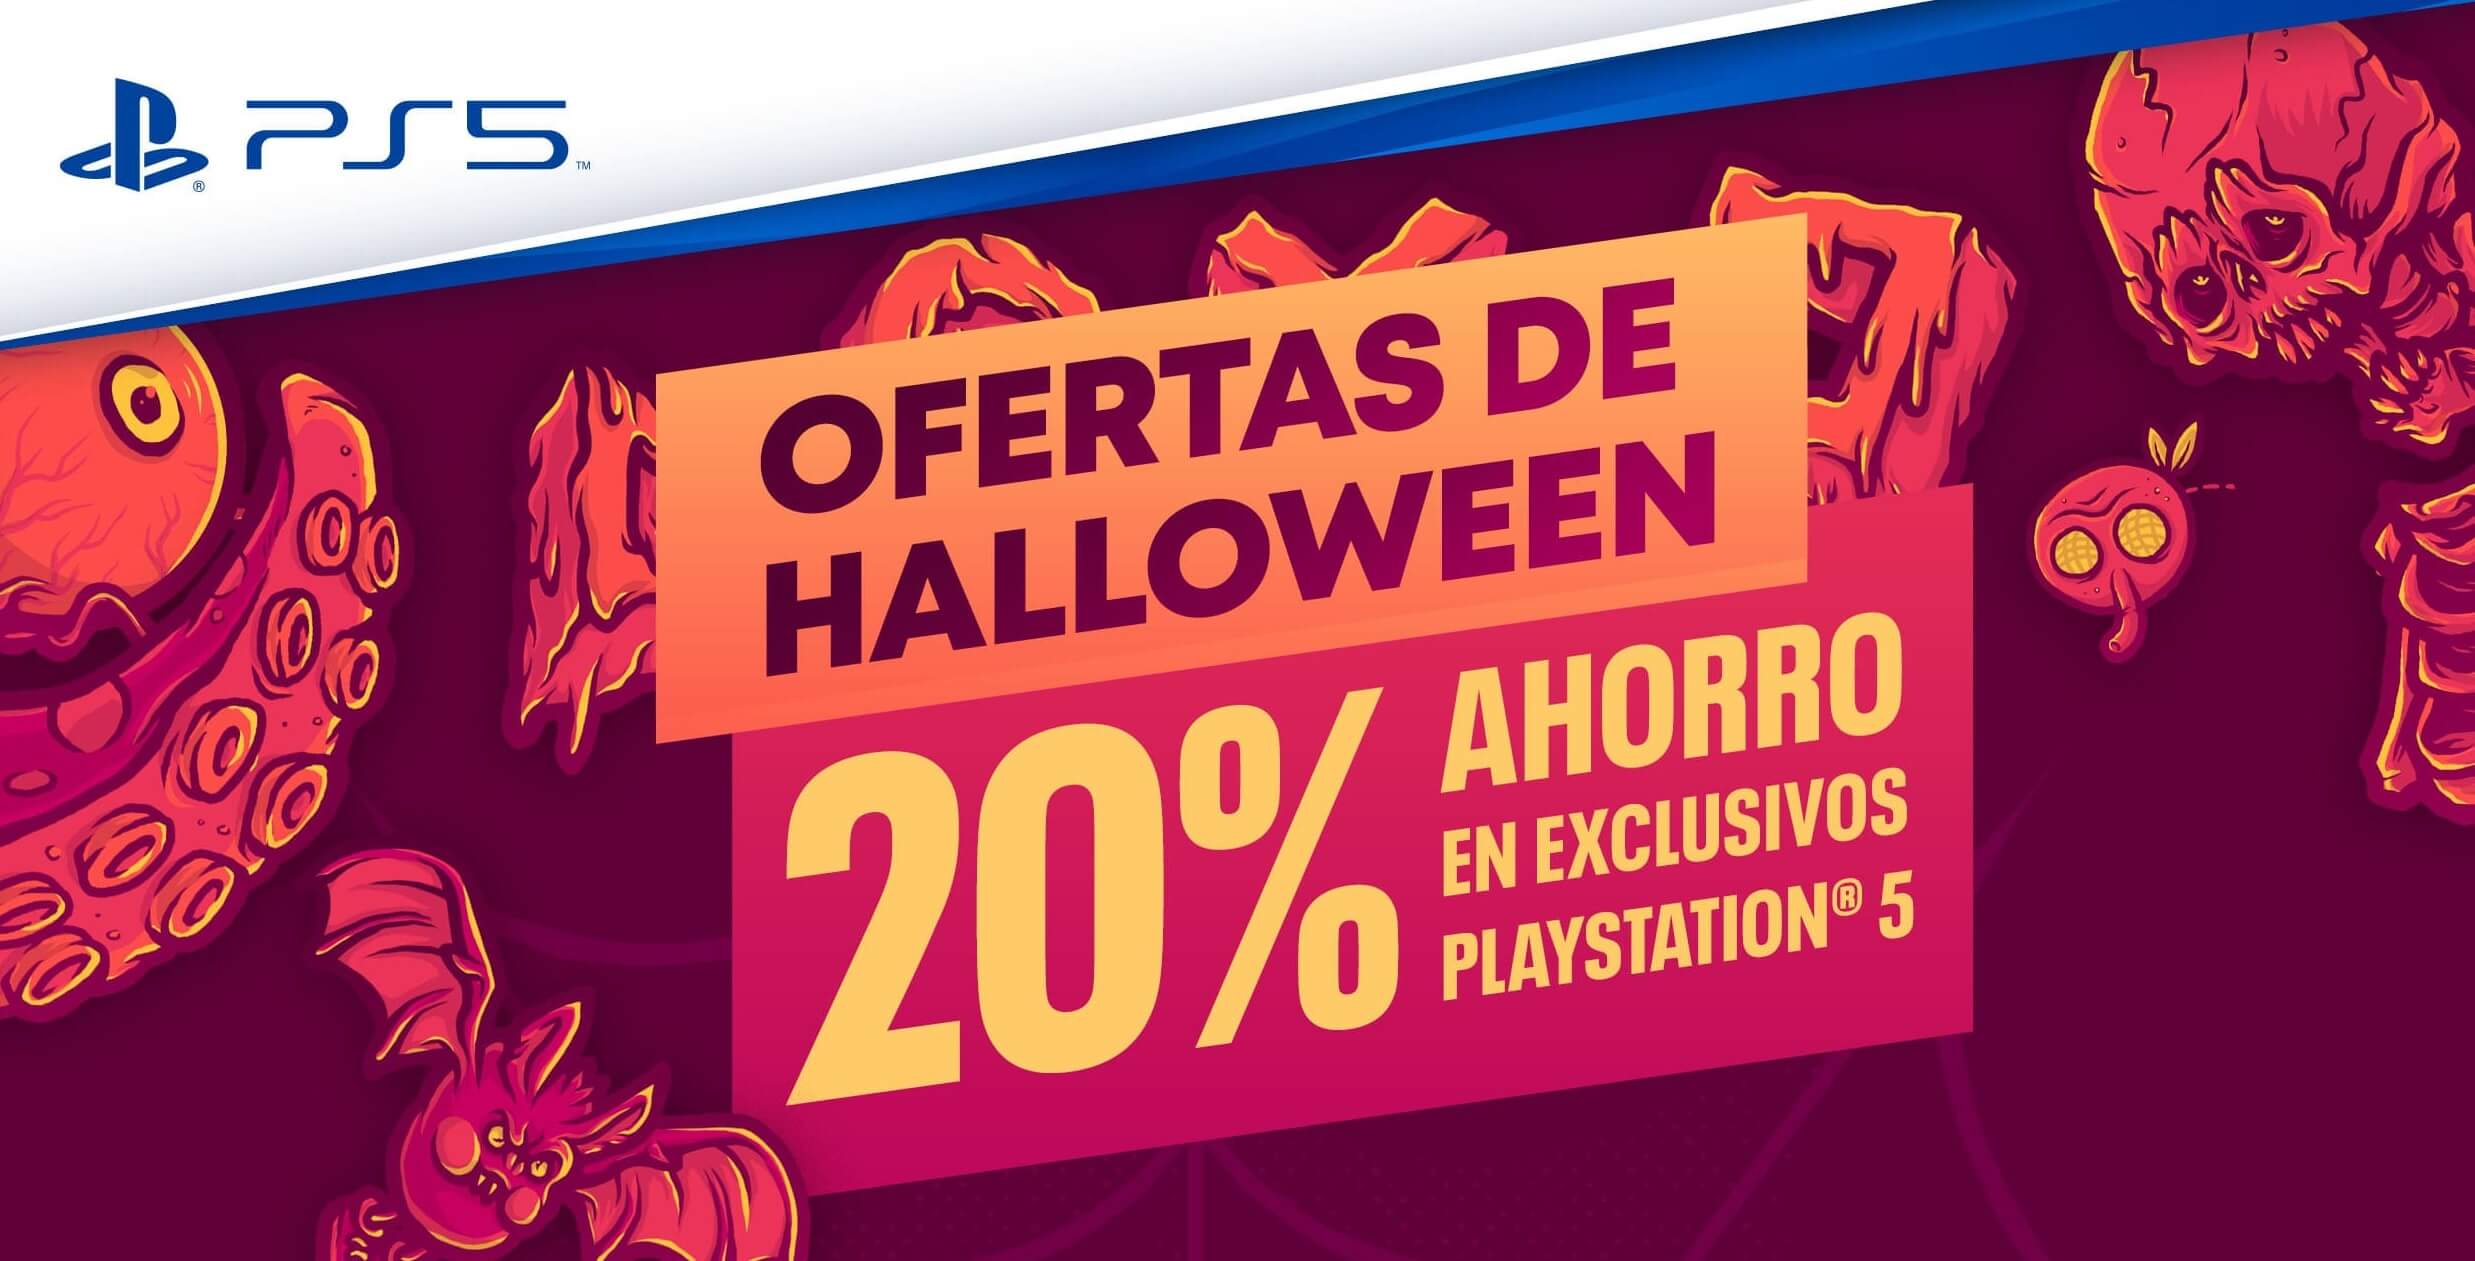 Las ofertas de Halloween en juegos físicos de PS5 ya han llegado a las tiendas